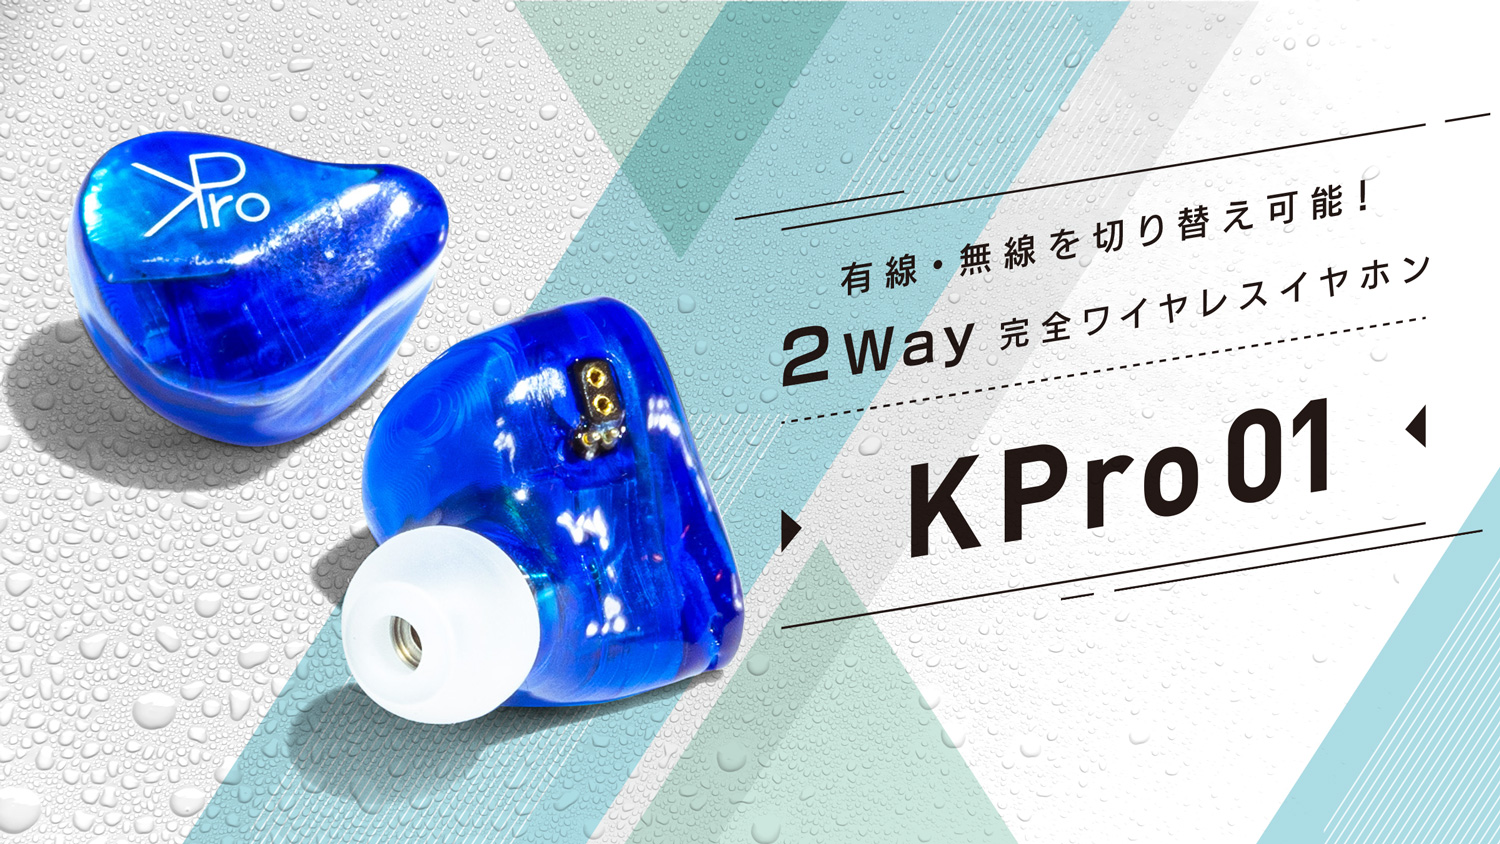 有線 無線を切り替え可能な完全ワイヤレスイヤホン オウルテック Kpro01 の一般発売が決定 株式会社オウルテック